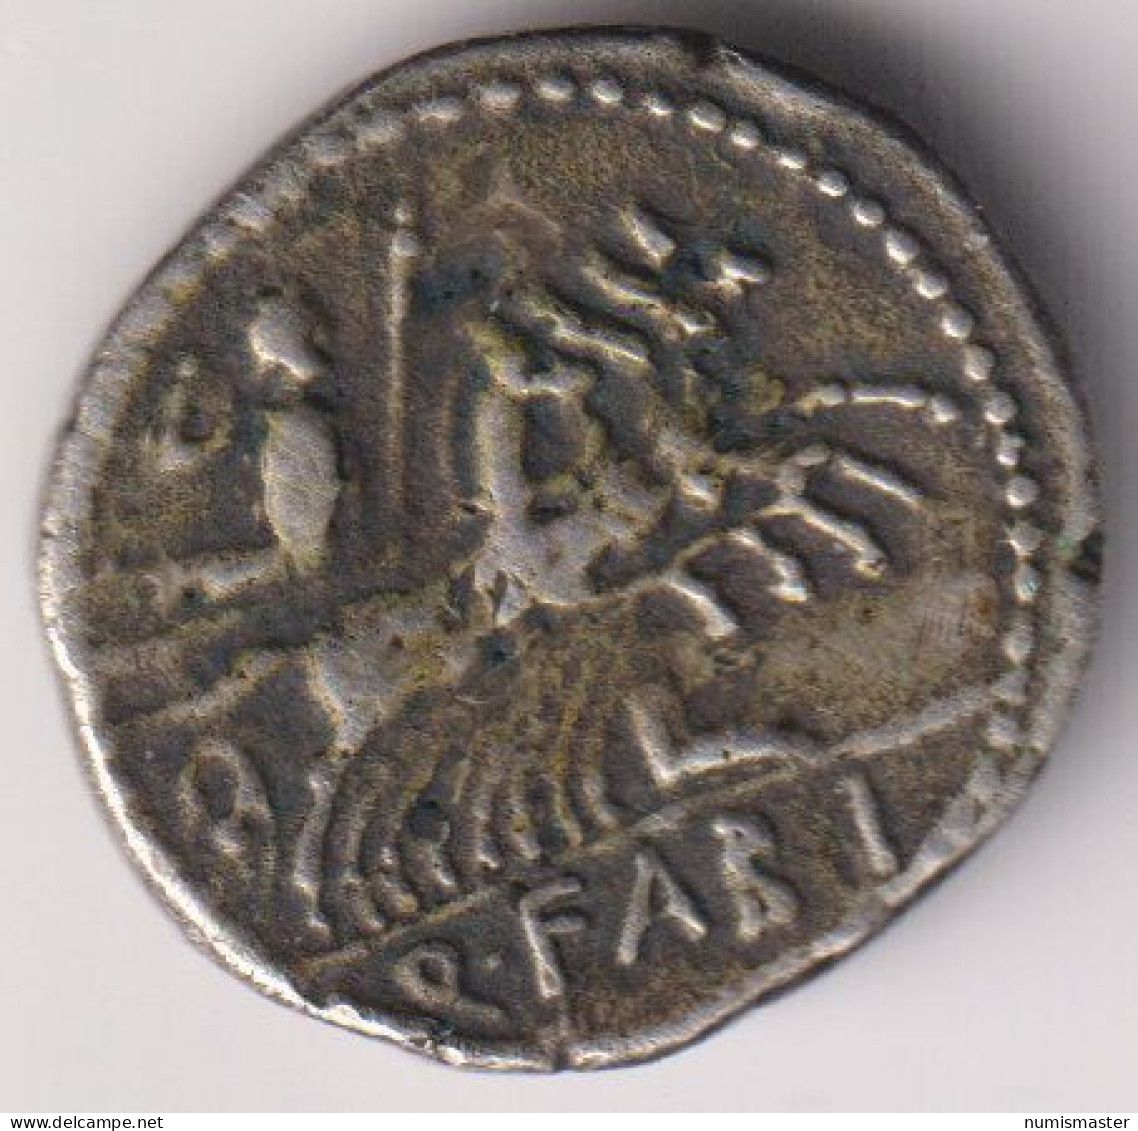 FABIUS LABEO , AR DENARIUS , 124 BC - Röm. Republik (-280 / -27)